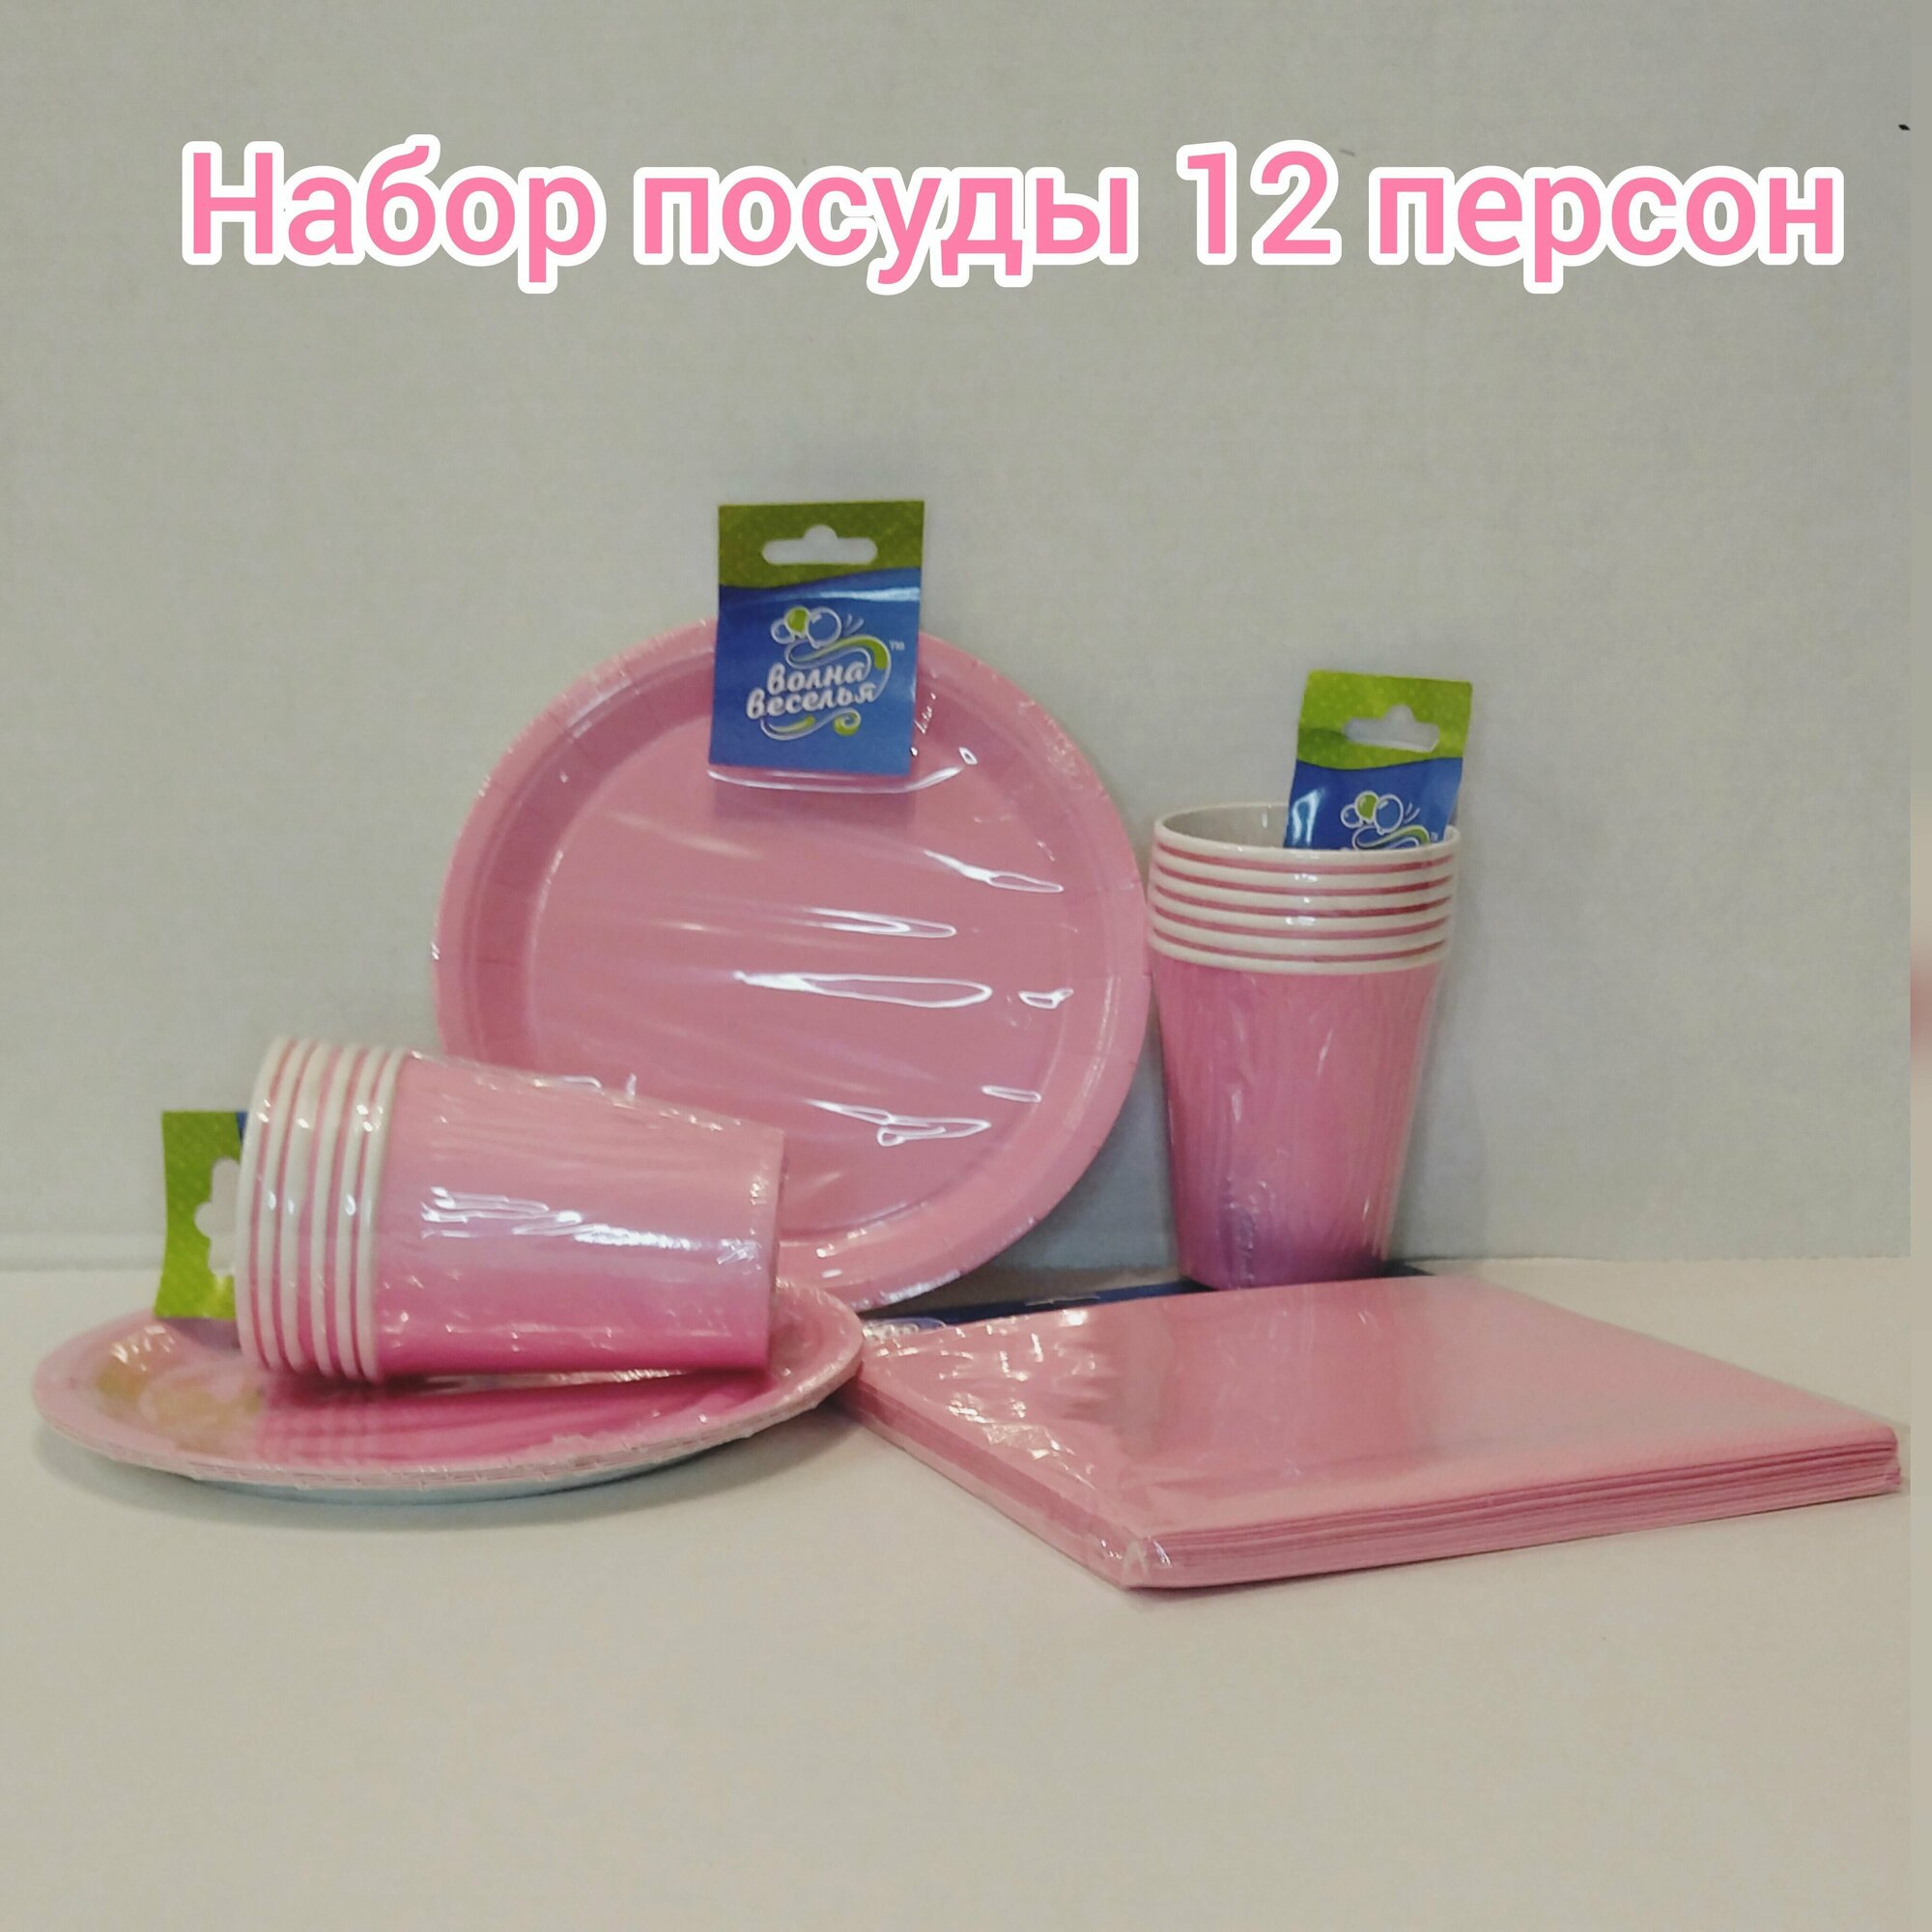 Набор одноразовой бумажной посуды для праздника /на День рождения/12 персон/Розовый (Стаканы 250 мл, Тарелки 18 см, Салфетки ) По 12 шт